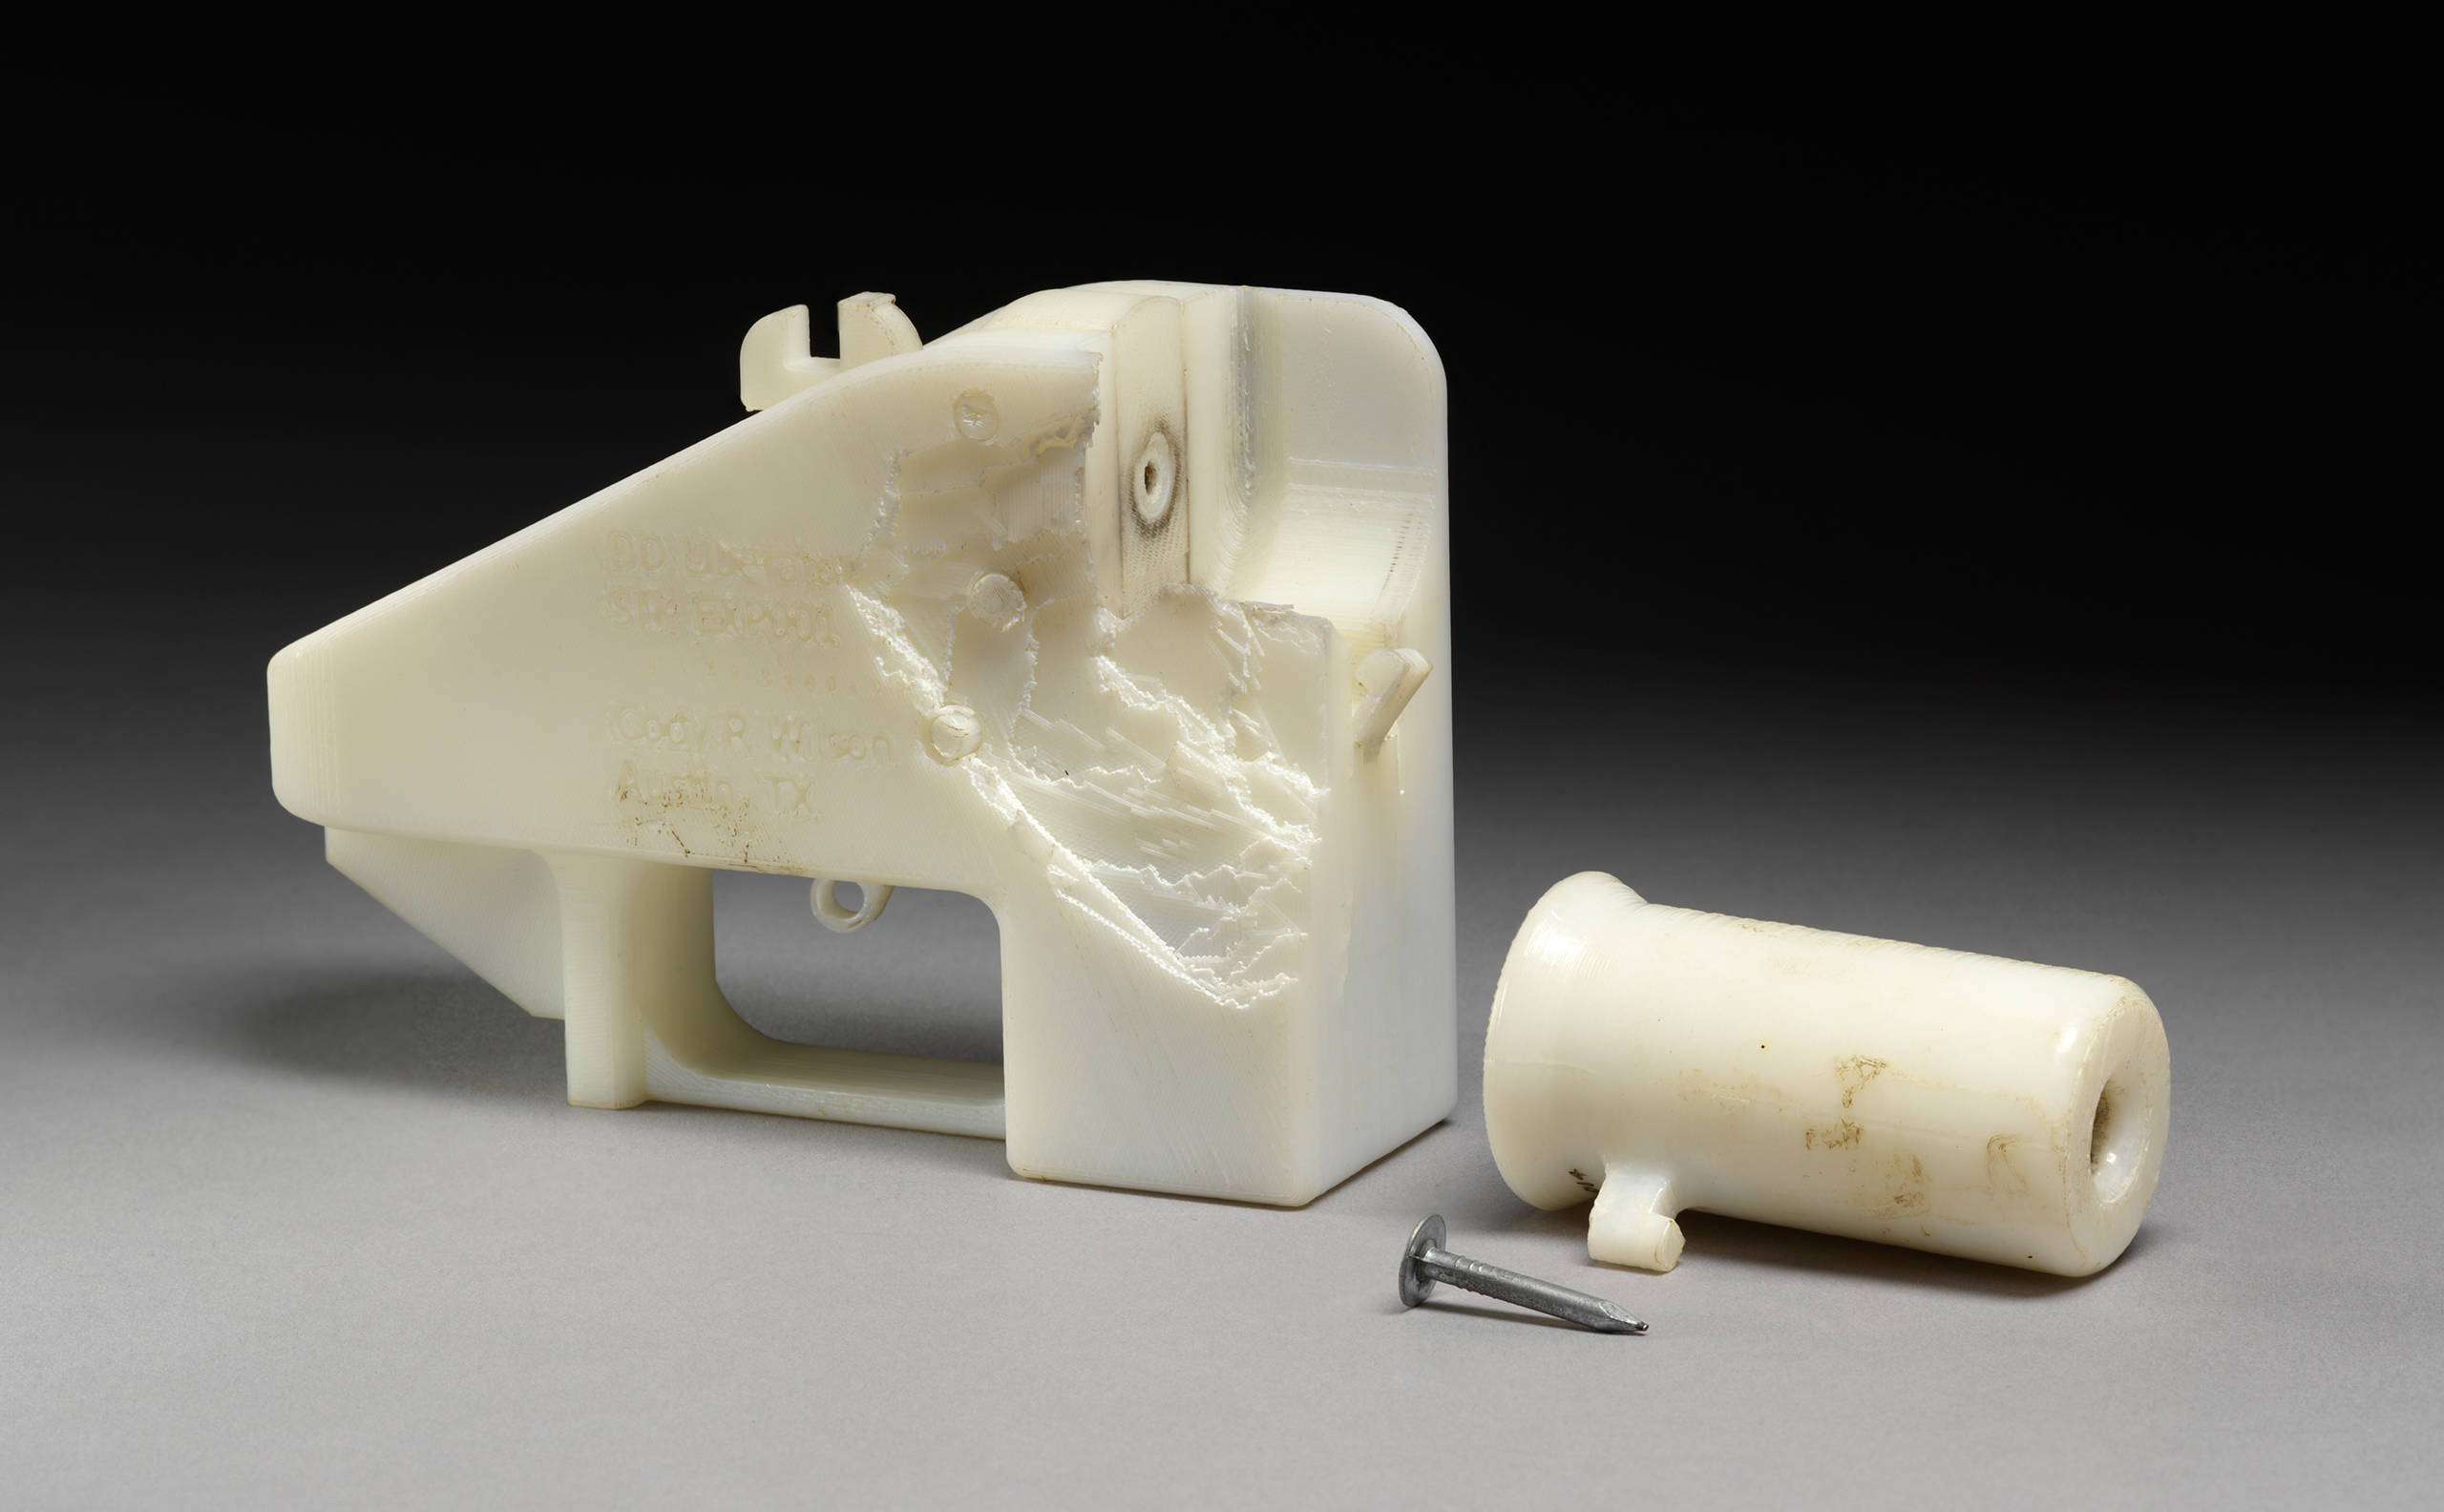 Огнестрельный DIY: история и перспективы 3D-печатного оружия - 7